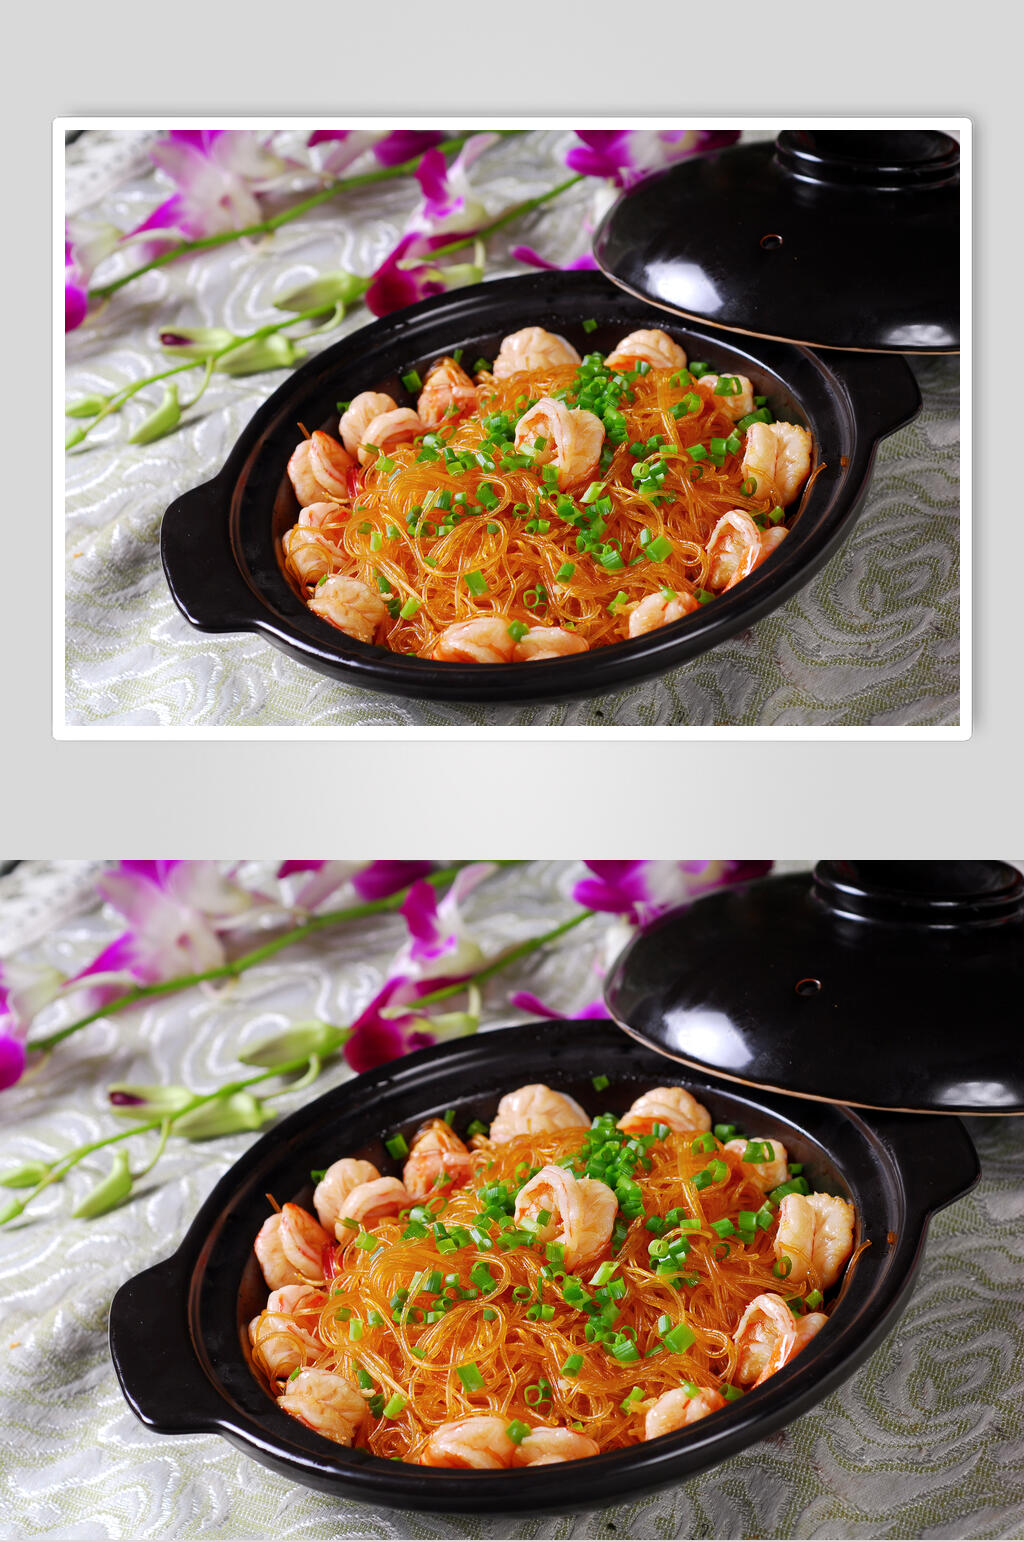 砂锅虾干粉丝煲美食高清图片